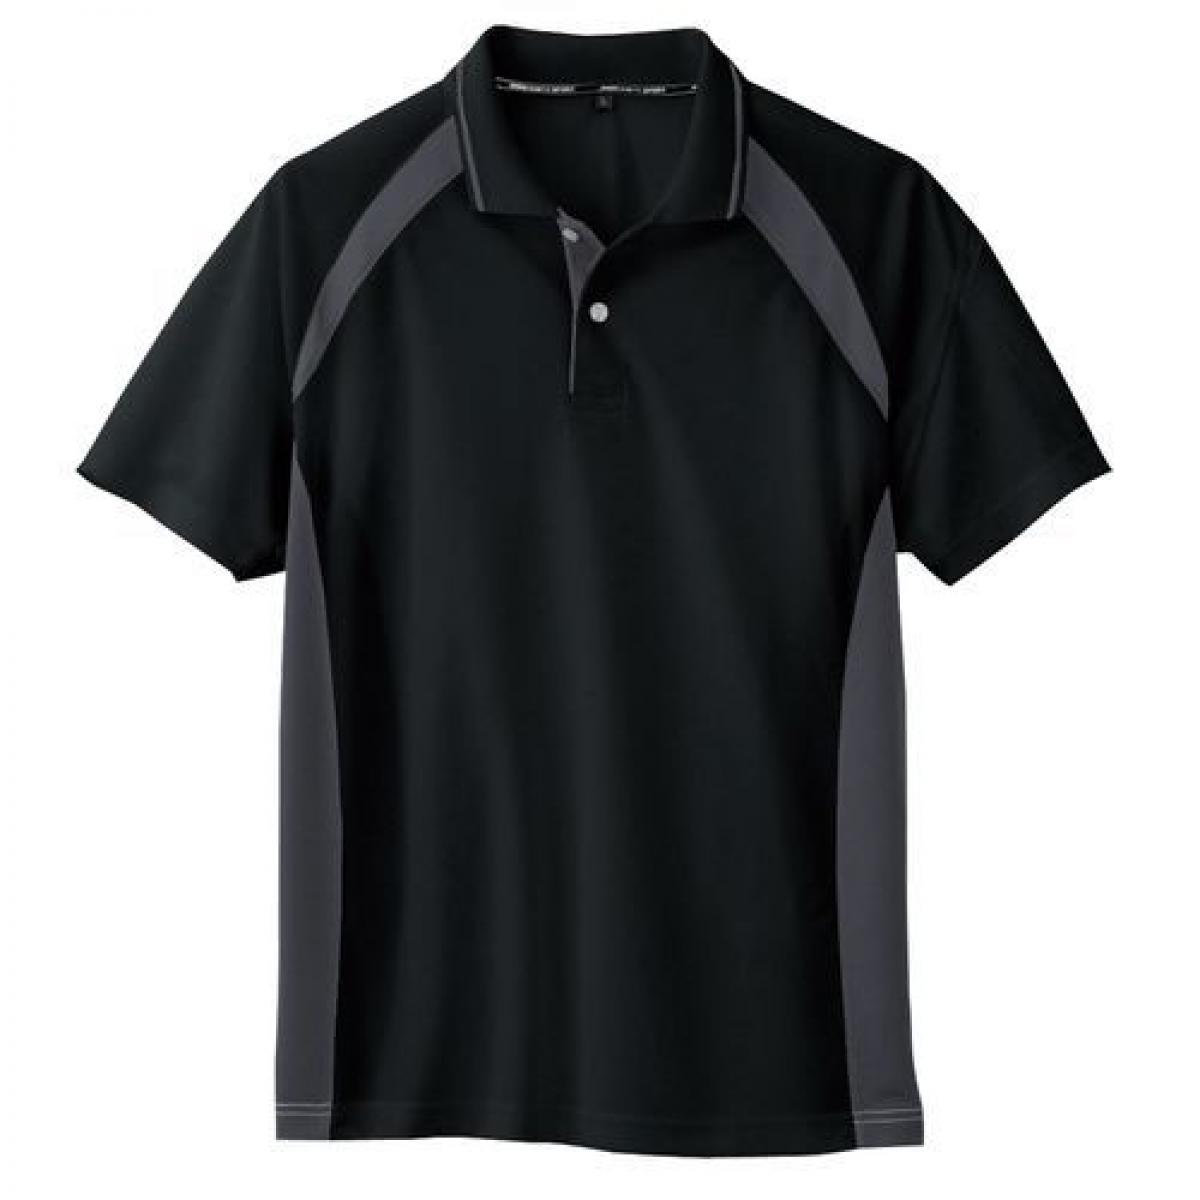 毎日激安特売で 営業中です コーコス信岡 AS-1627 2021最新のスタイル 半袖ポロシャツ ブラック 3L 吸汗速乾